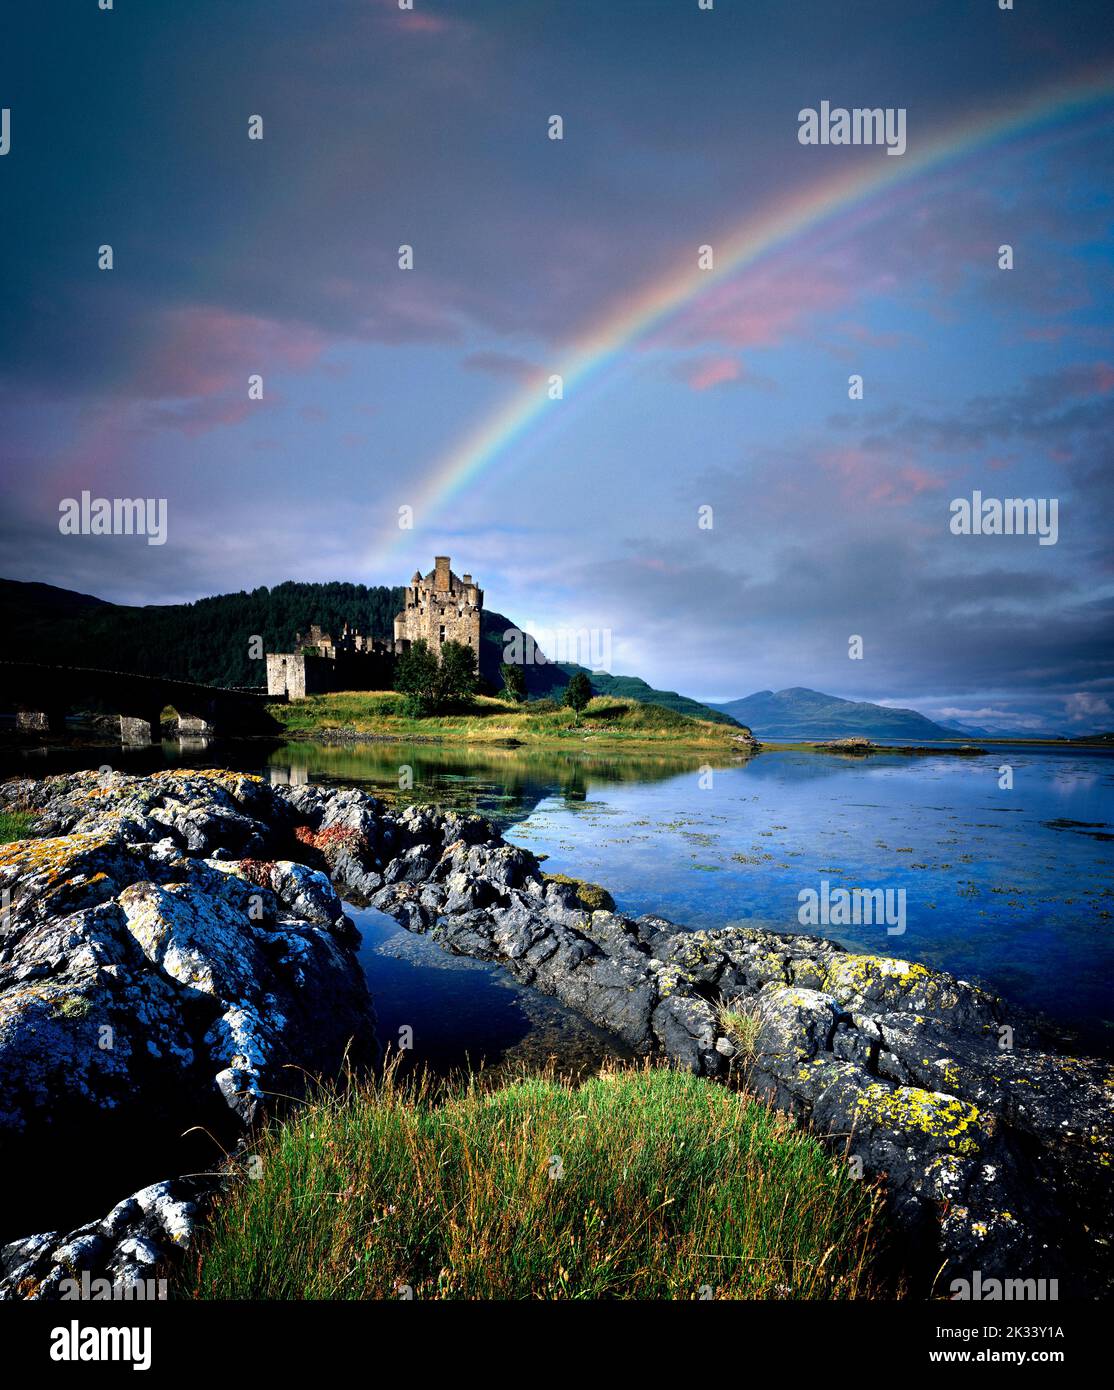 GB - Scozia: Castello Eilean Donan nelle Highlands Foto Stock